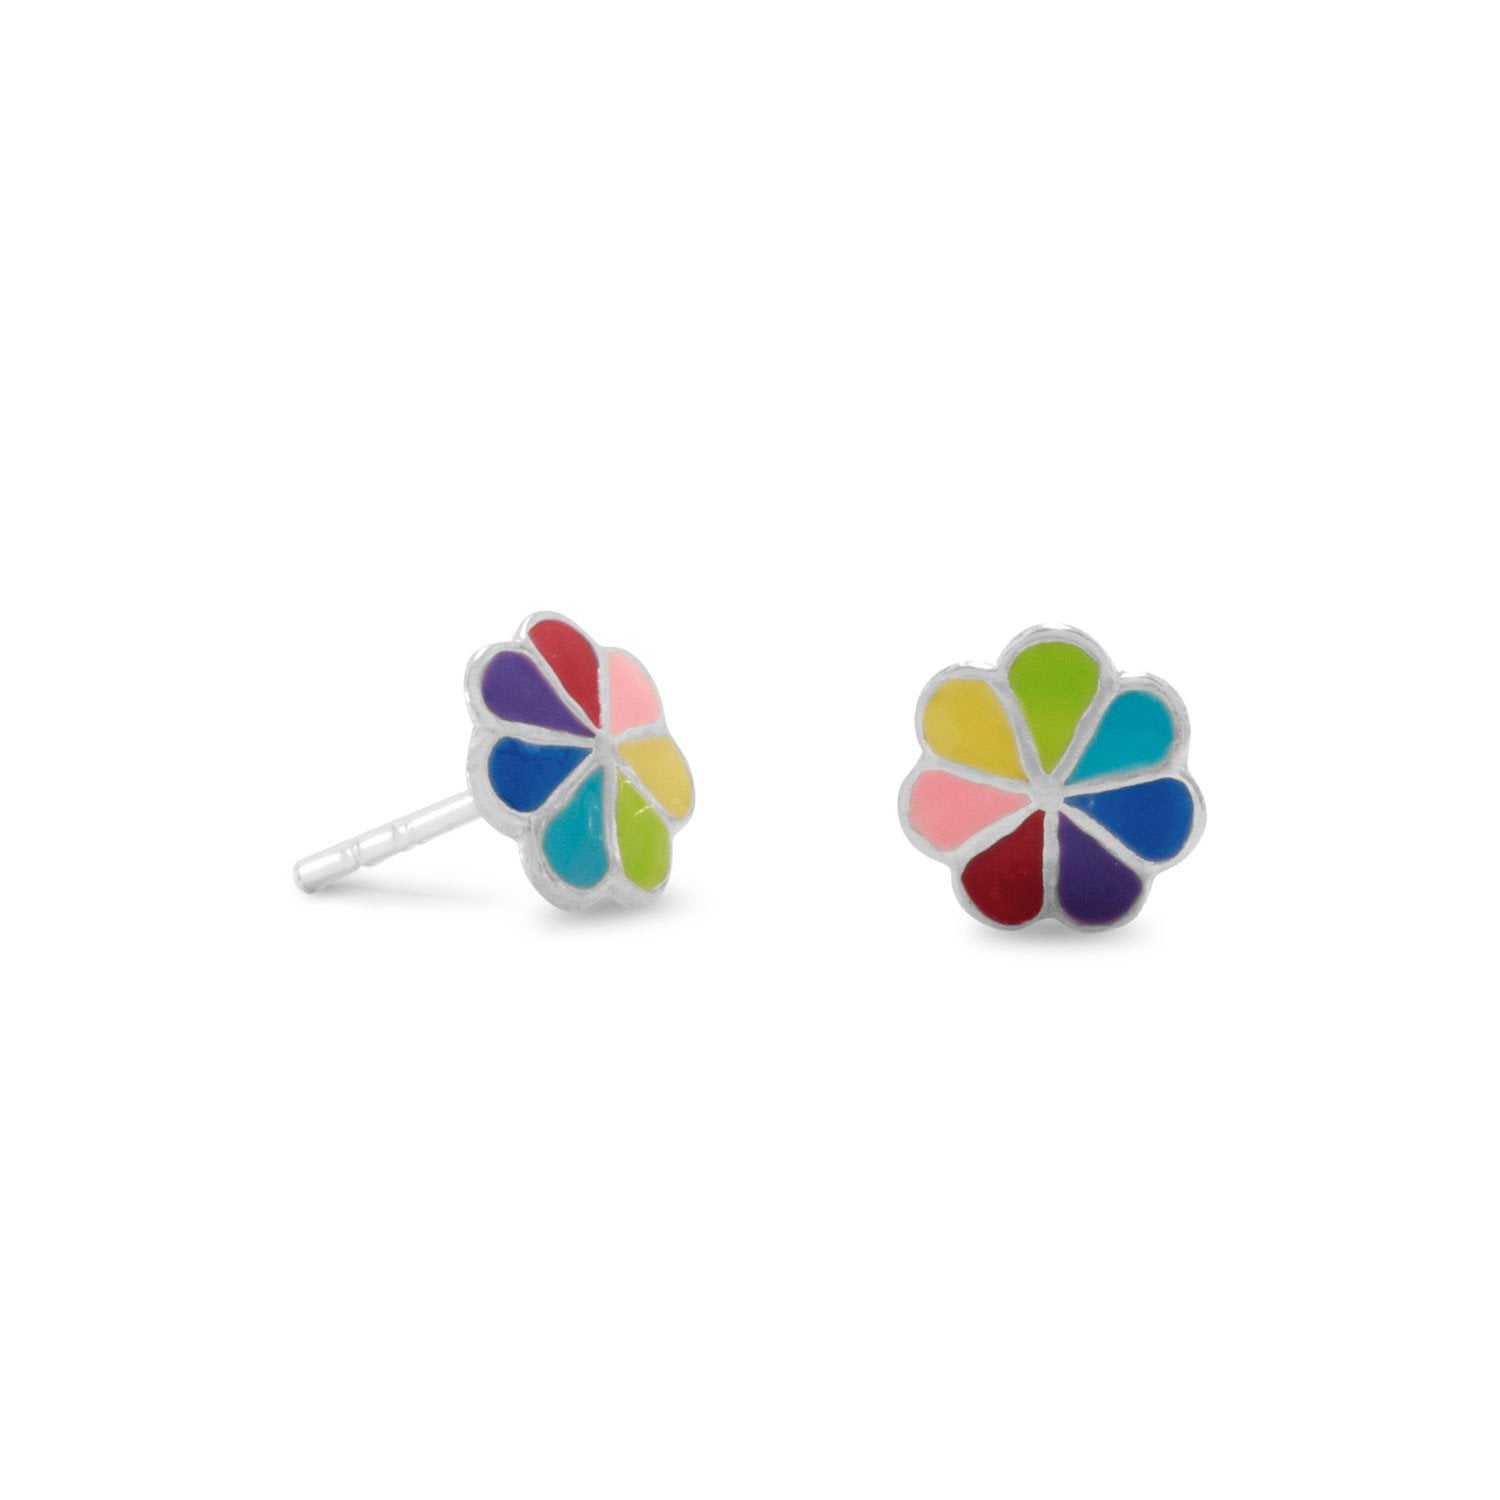 Multicolor Enamel Flower Post Earrings